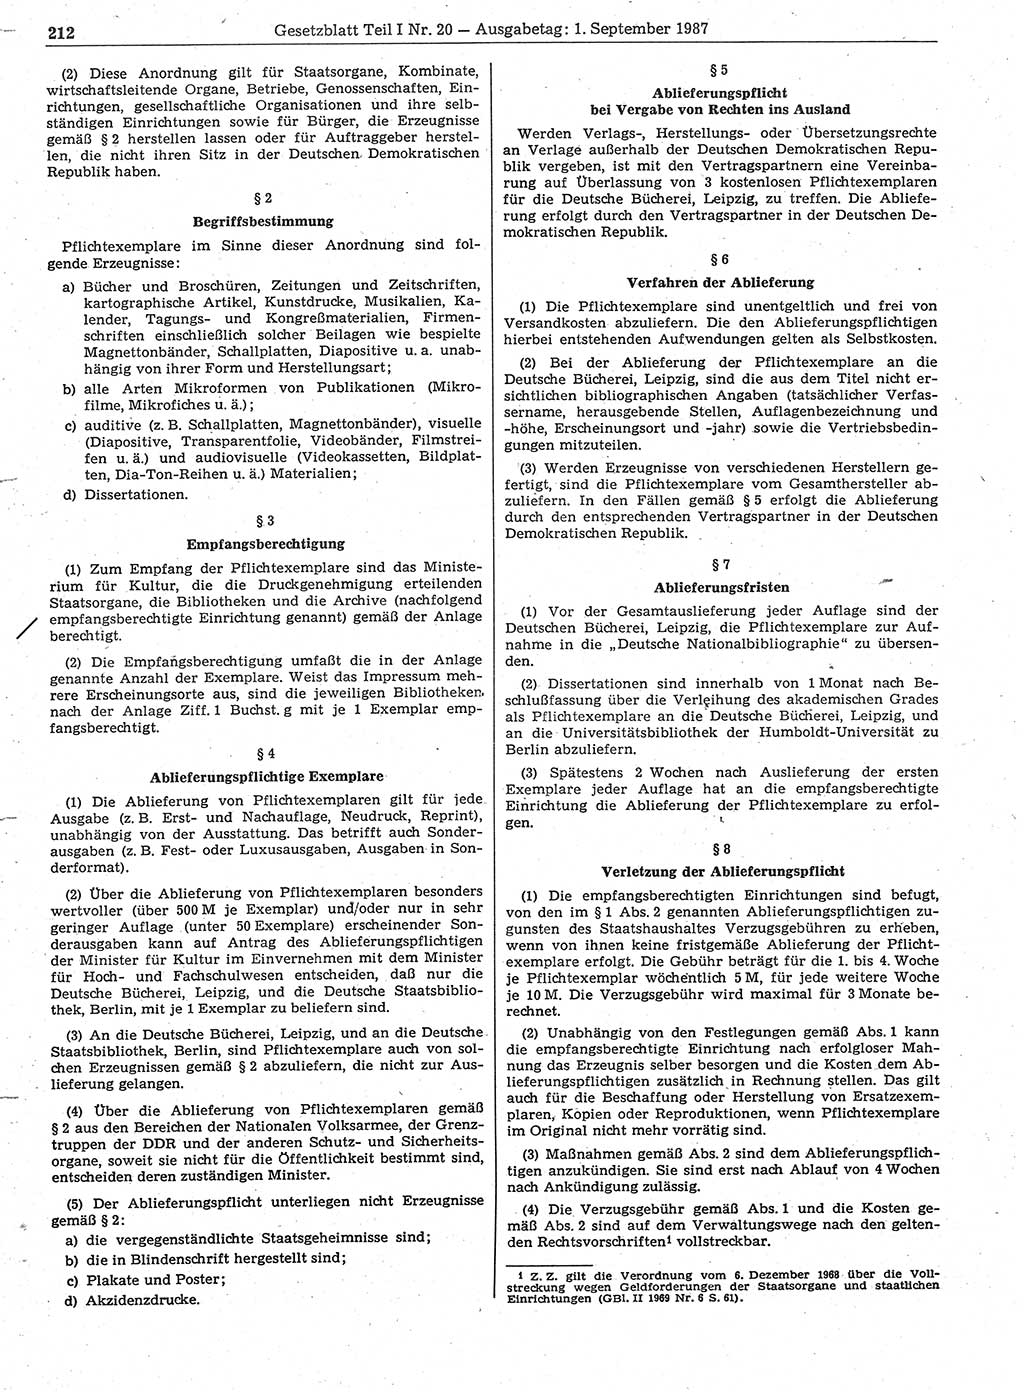 Gesetzblatt (GBl.) der Deutschen Demokratischen Republik (DDR) Teil Ⅰ 1987, Seite 212 (GBl. DDR Ⅰ 1987, S. 212)